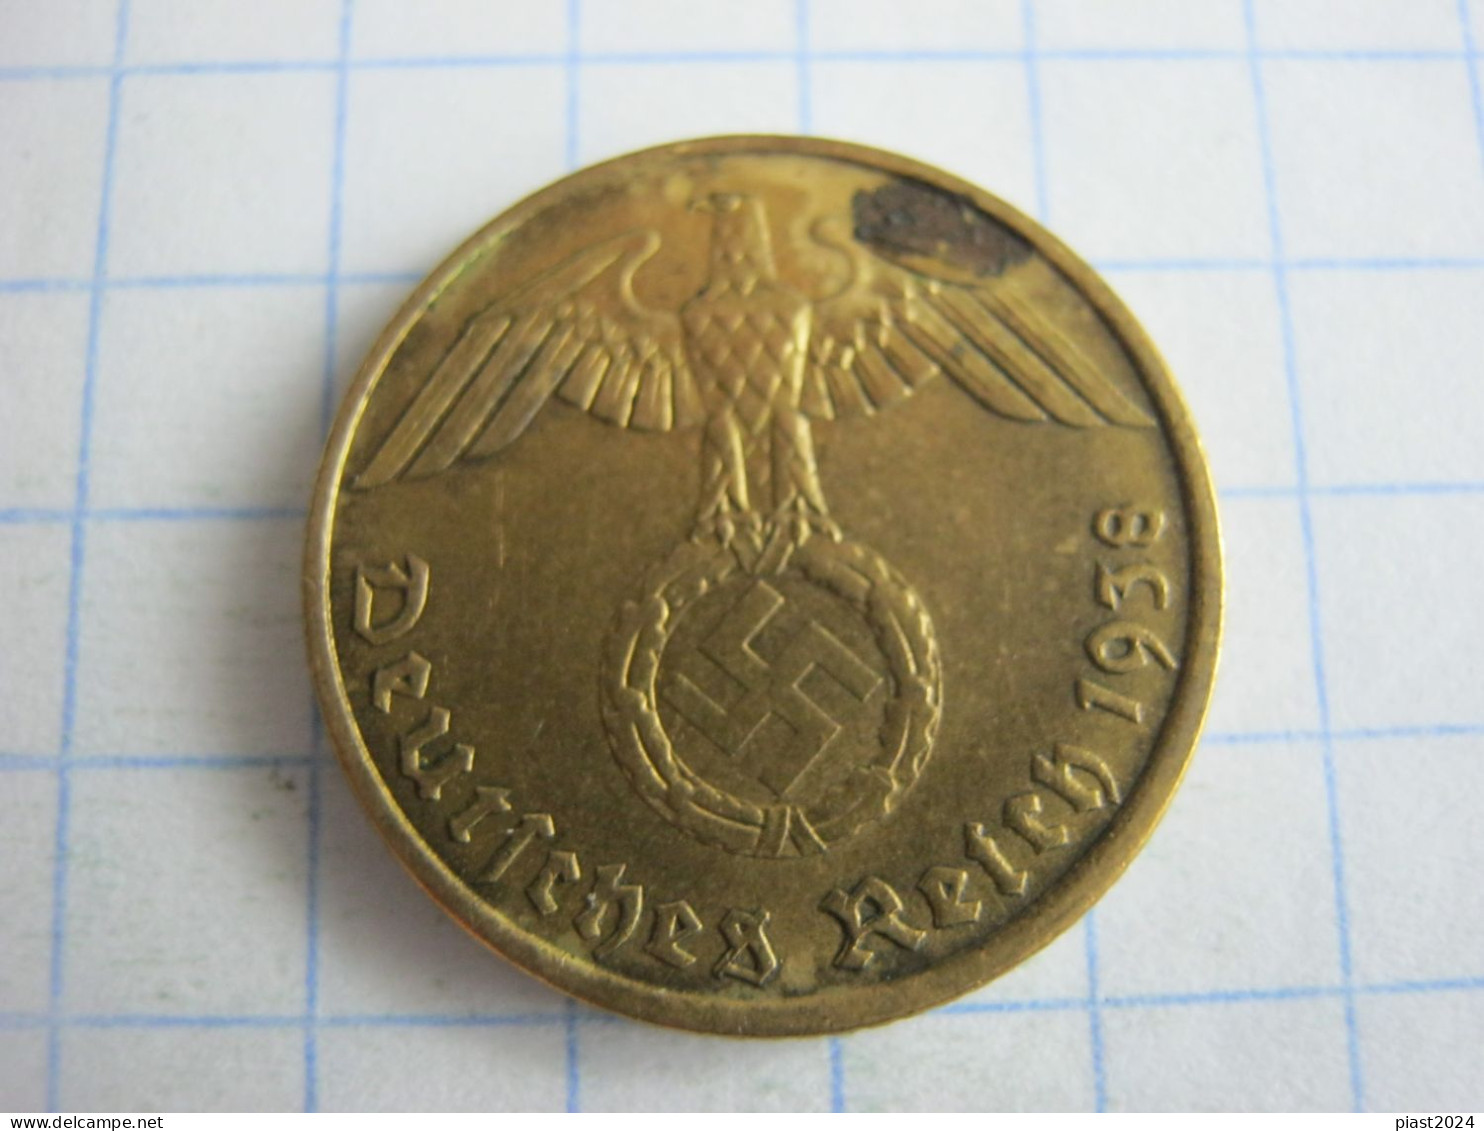 Germany 5 Reichspfennig 1938 A - 5 Reichspfennig